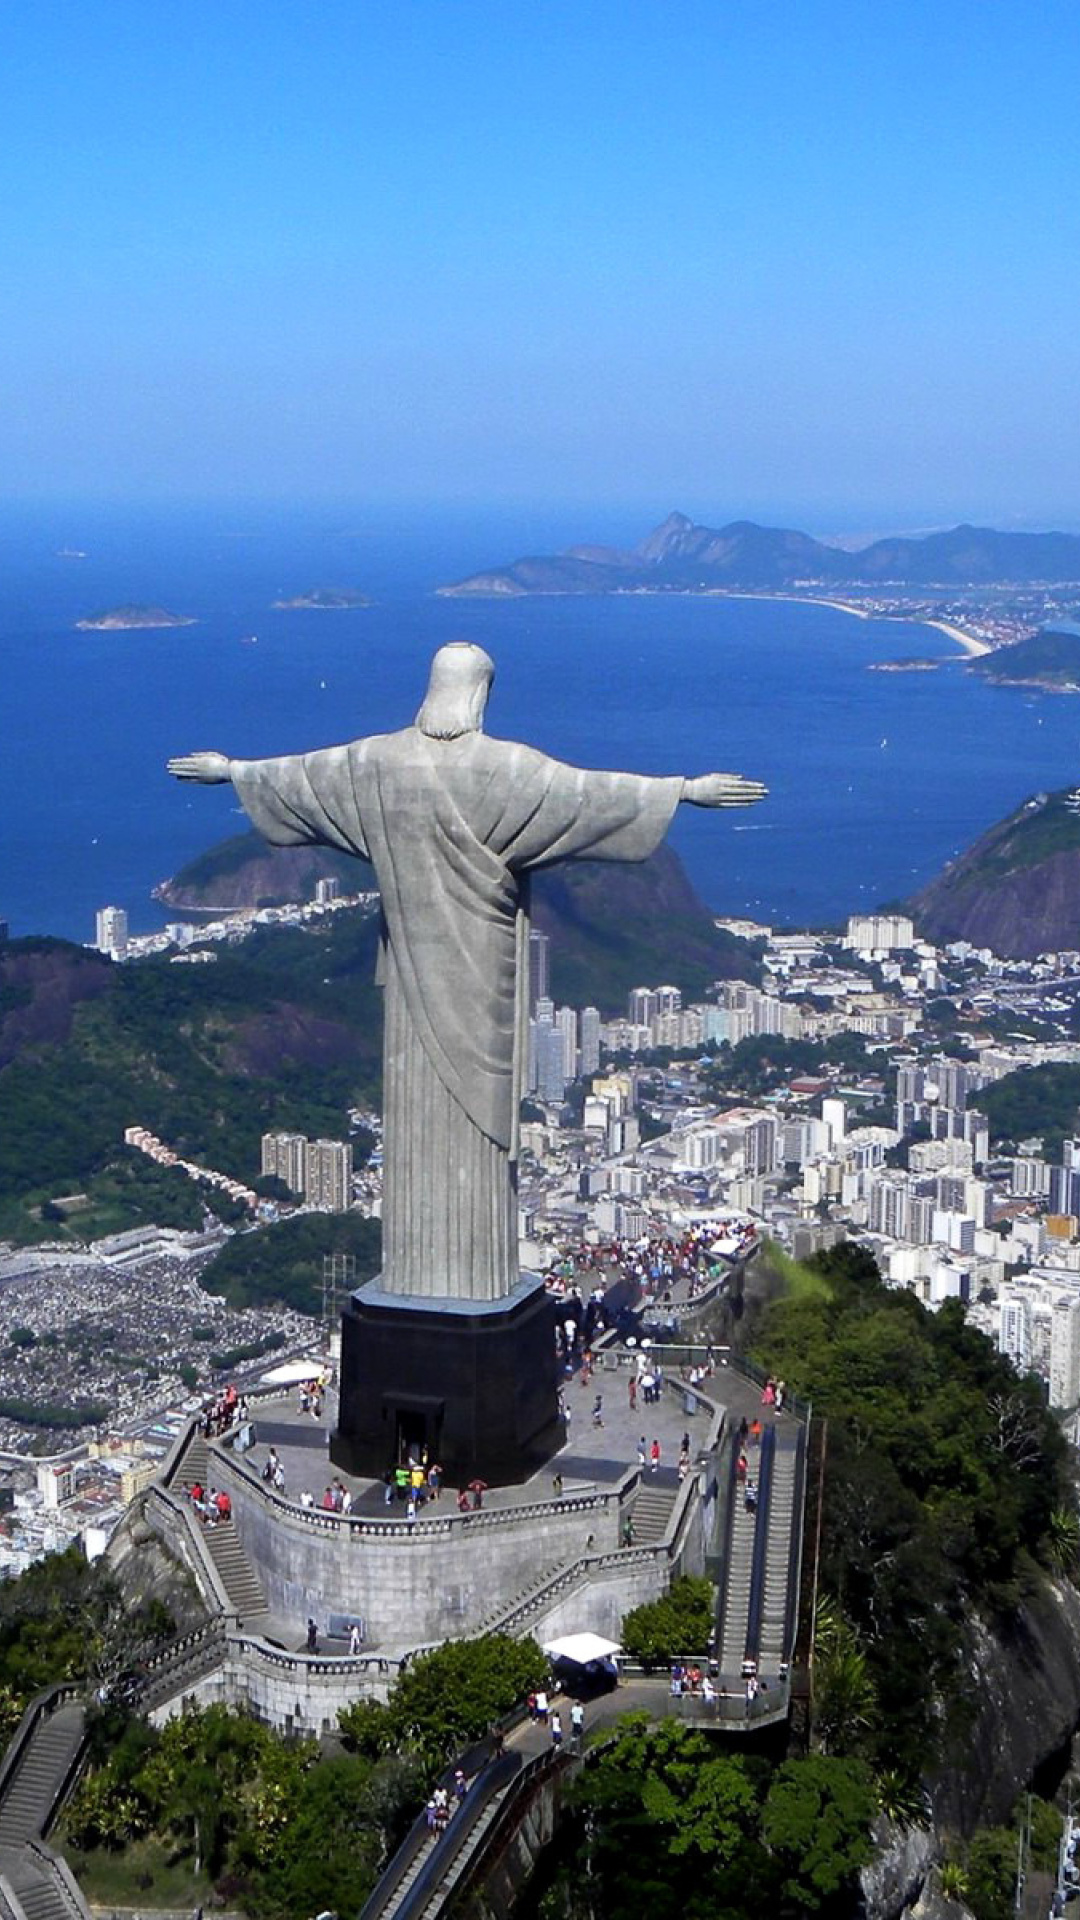 Christ the Redeemer statue in Rio de Janeiro screenshot #1 1080x1920